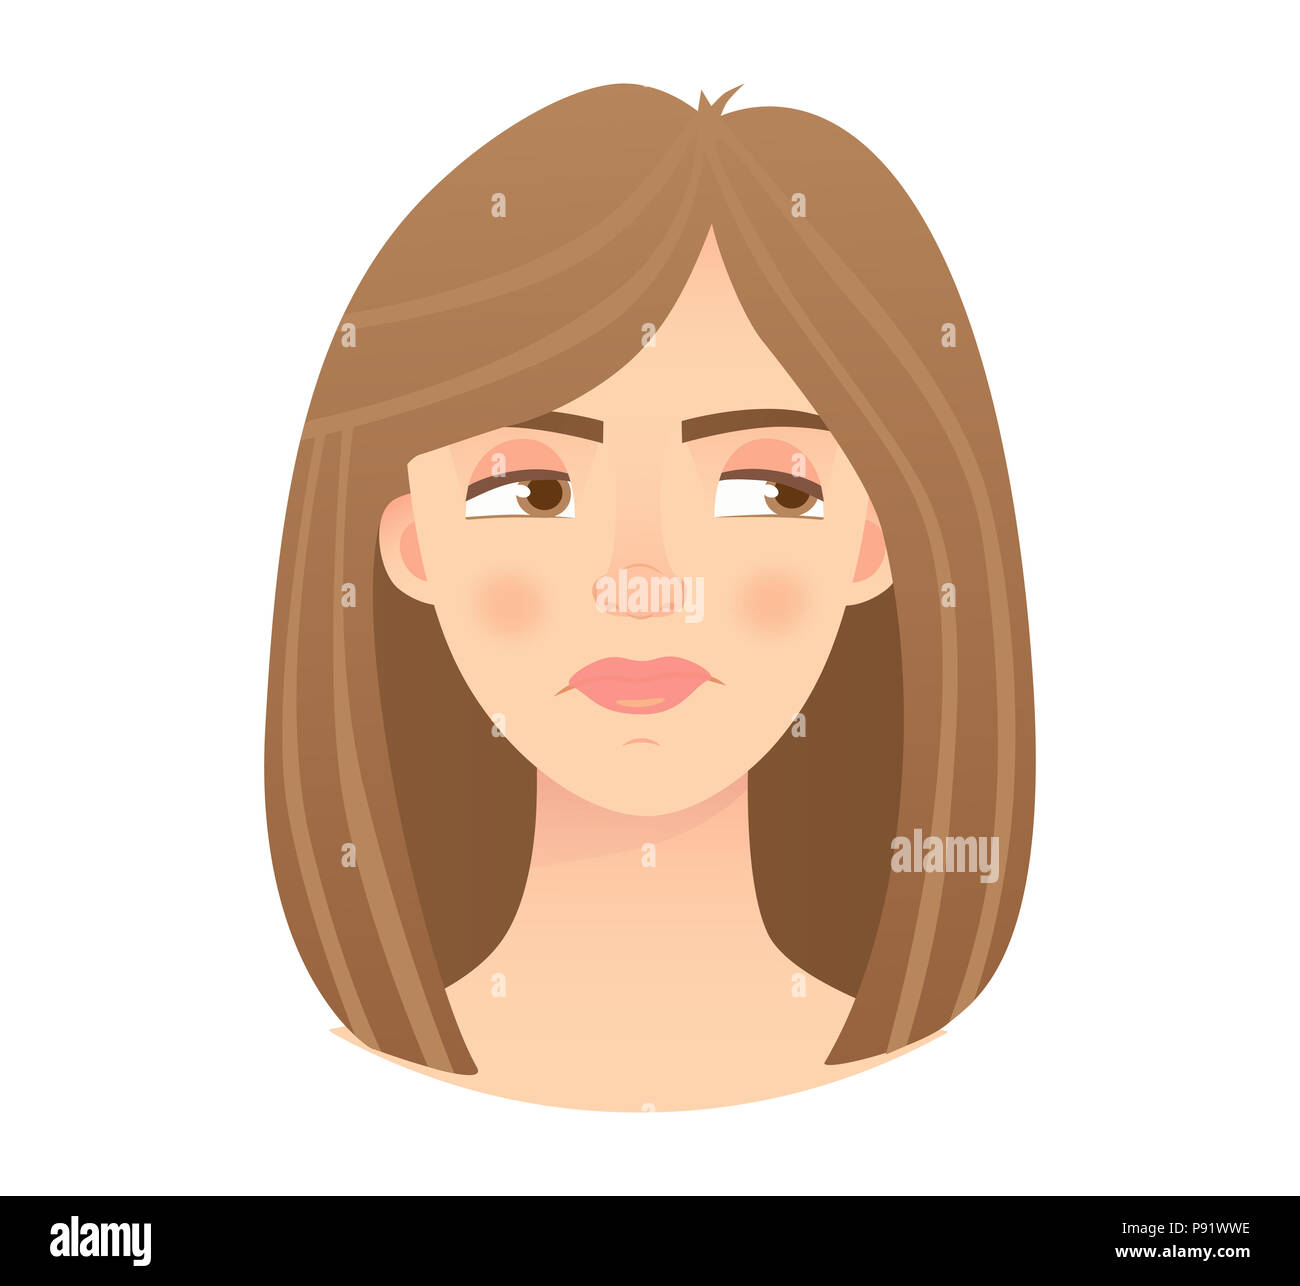 Des émotions de femme. Illustration de l'expression du visage. Banque D'Images